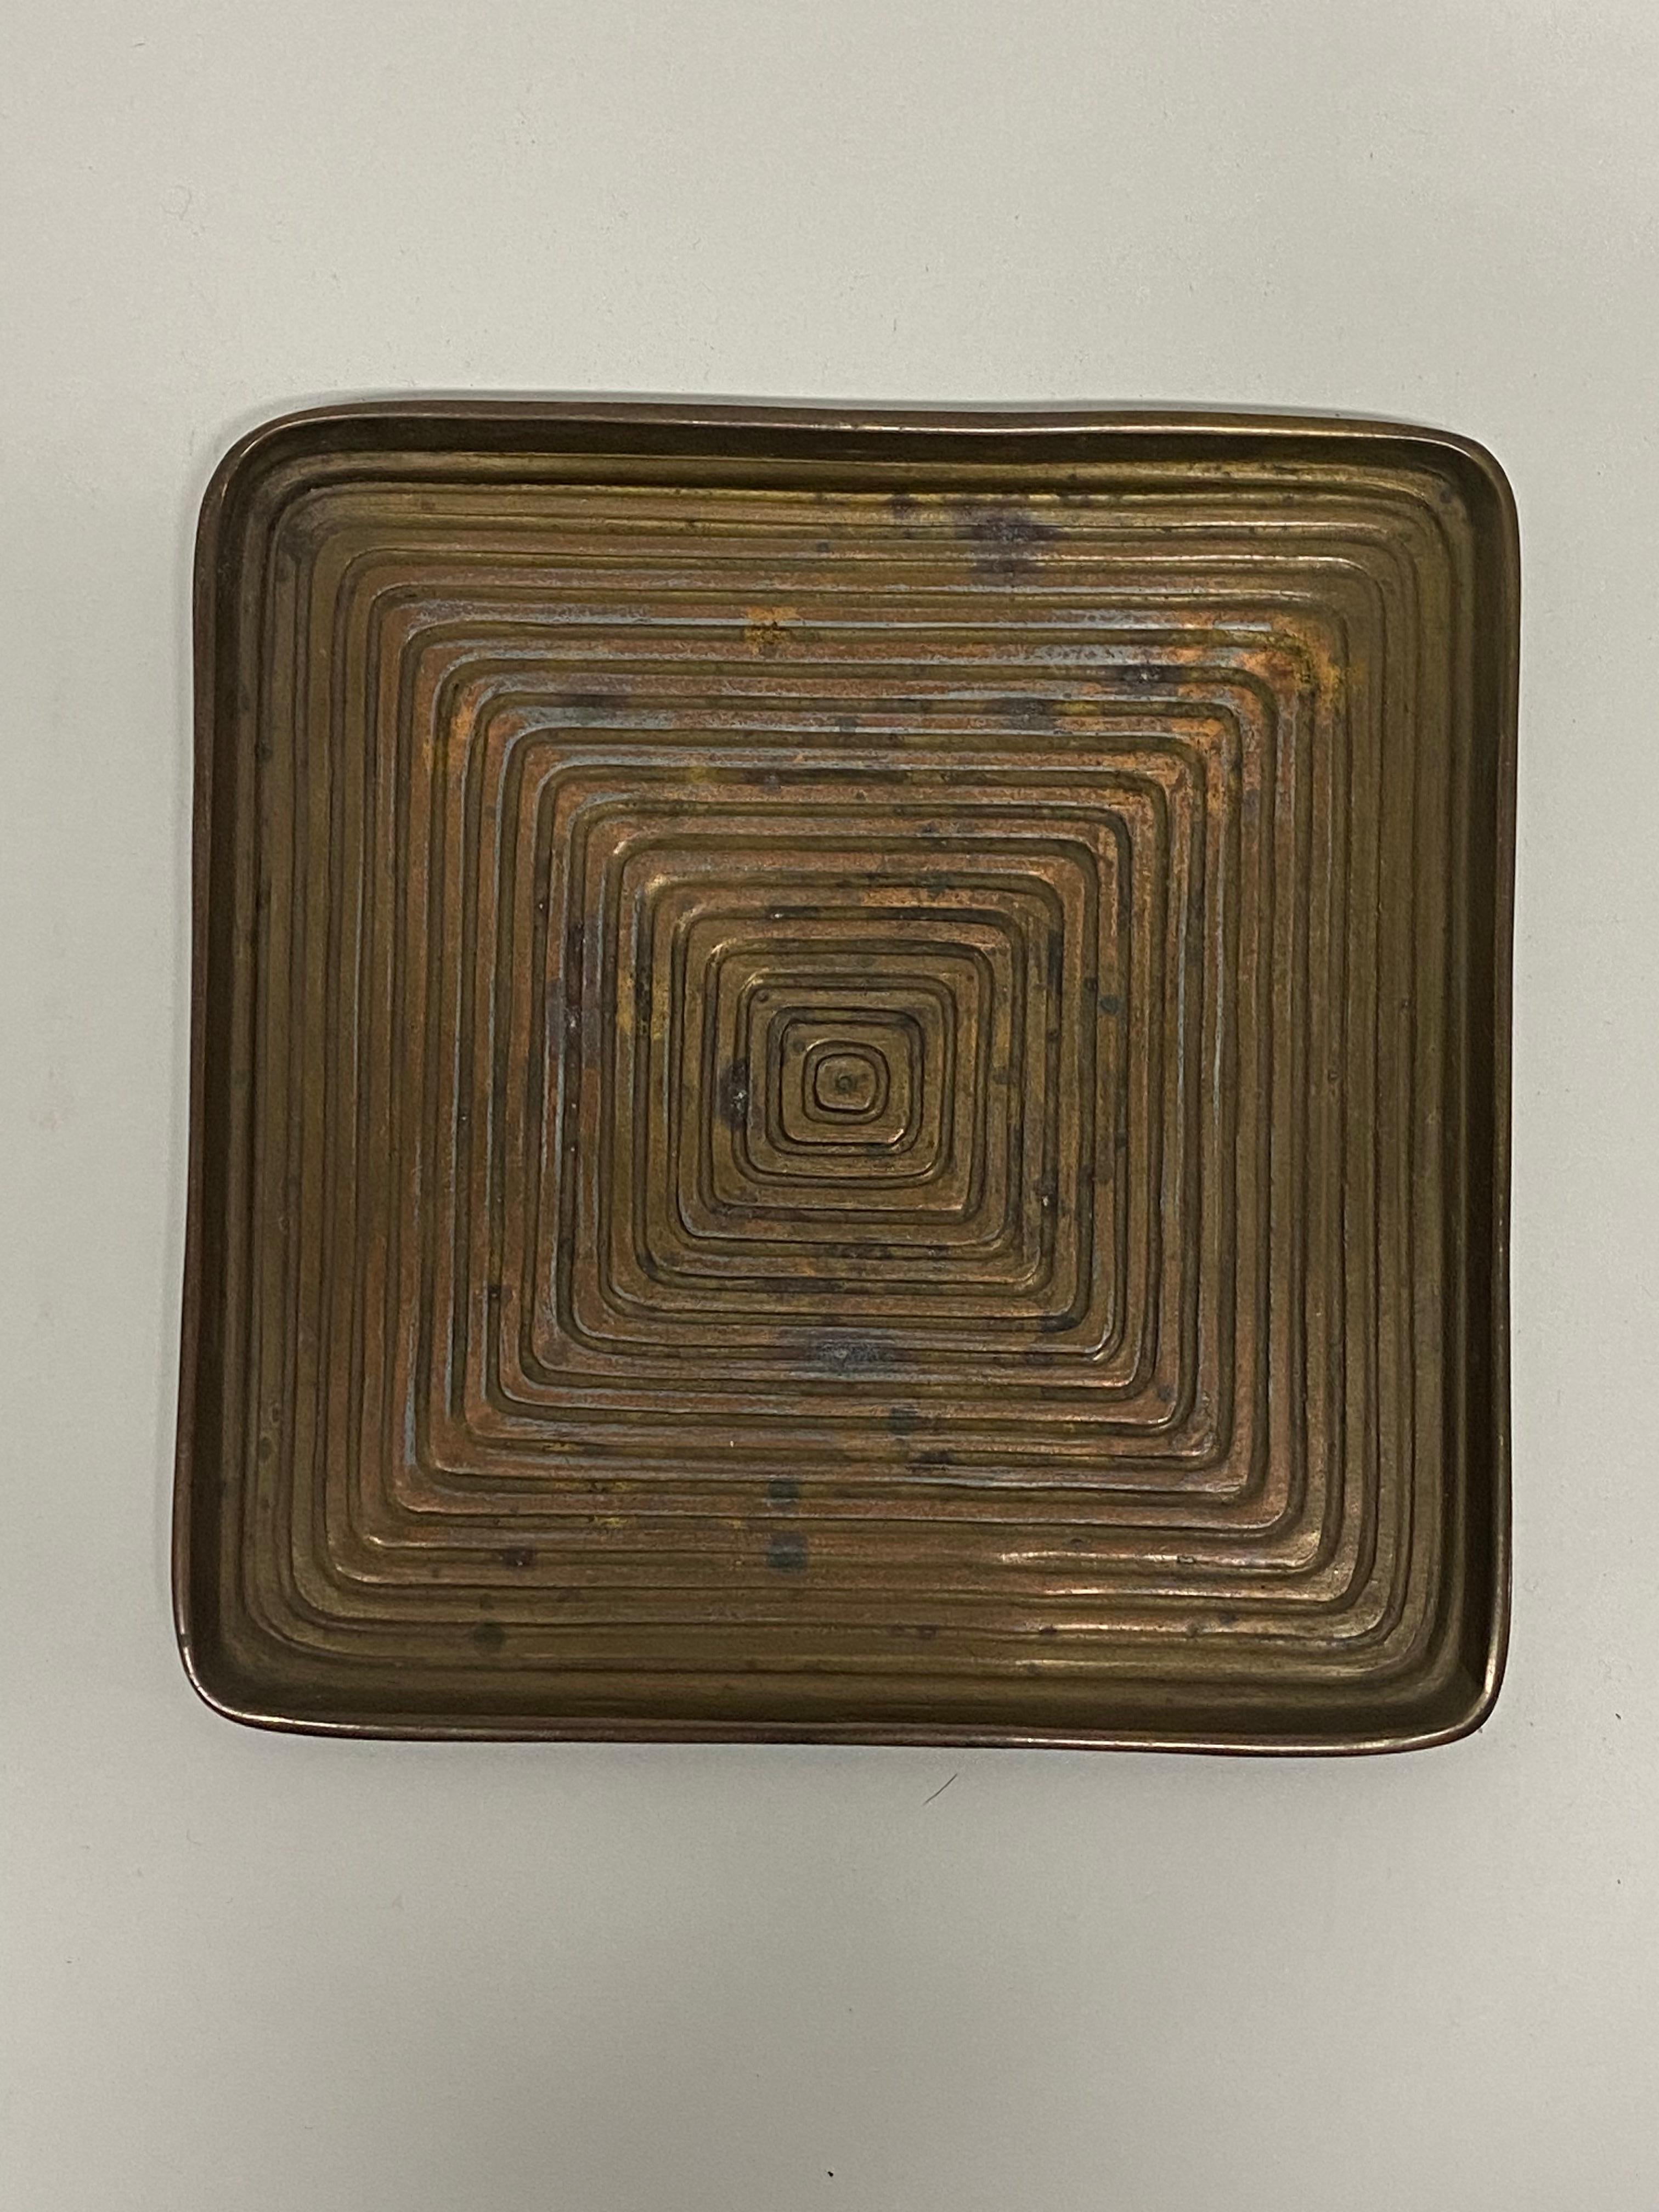 Konzentrische, quadratische Schale aus Metallguss, entworfen von Ben Seibel für Jenfred. Um 1950. Seibel schafft ein schönes optisches Labyrinth aus immer größer werdenden konzentrischen Quadraten. Guter Gesamtzustand mit leichter Oxidation und